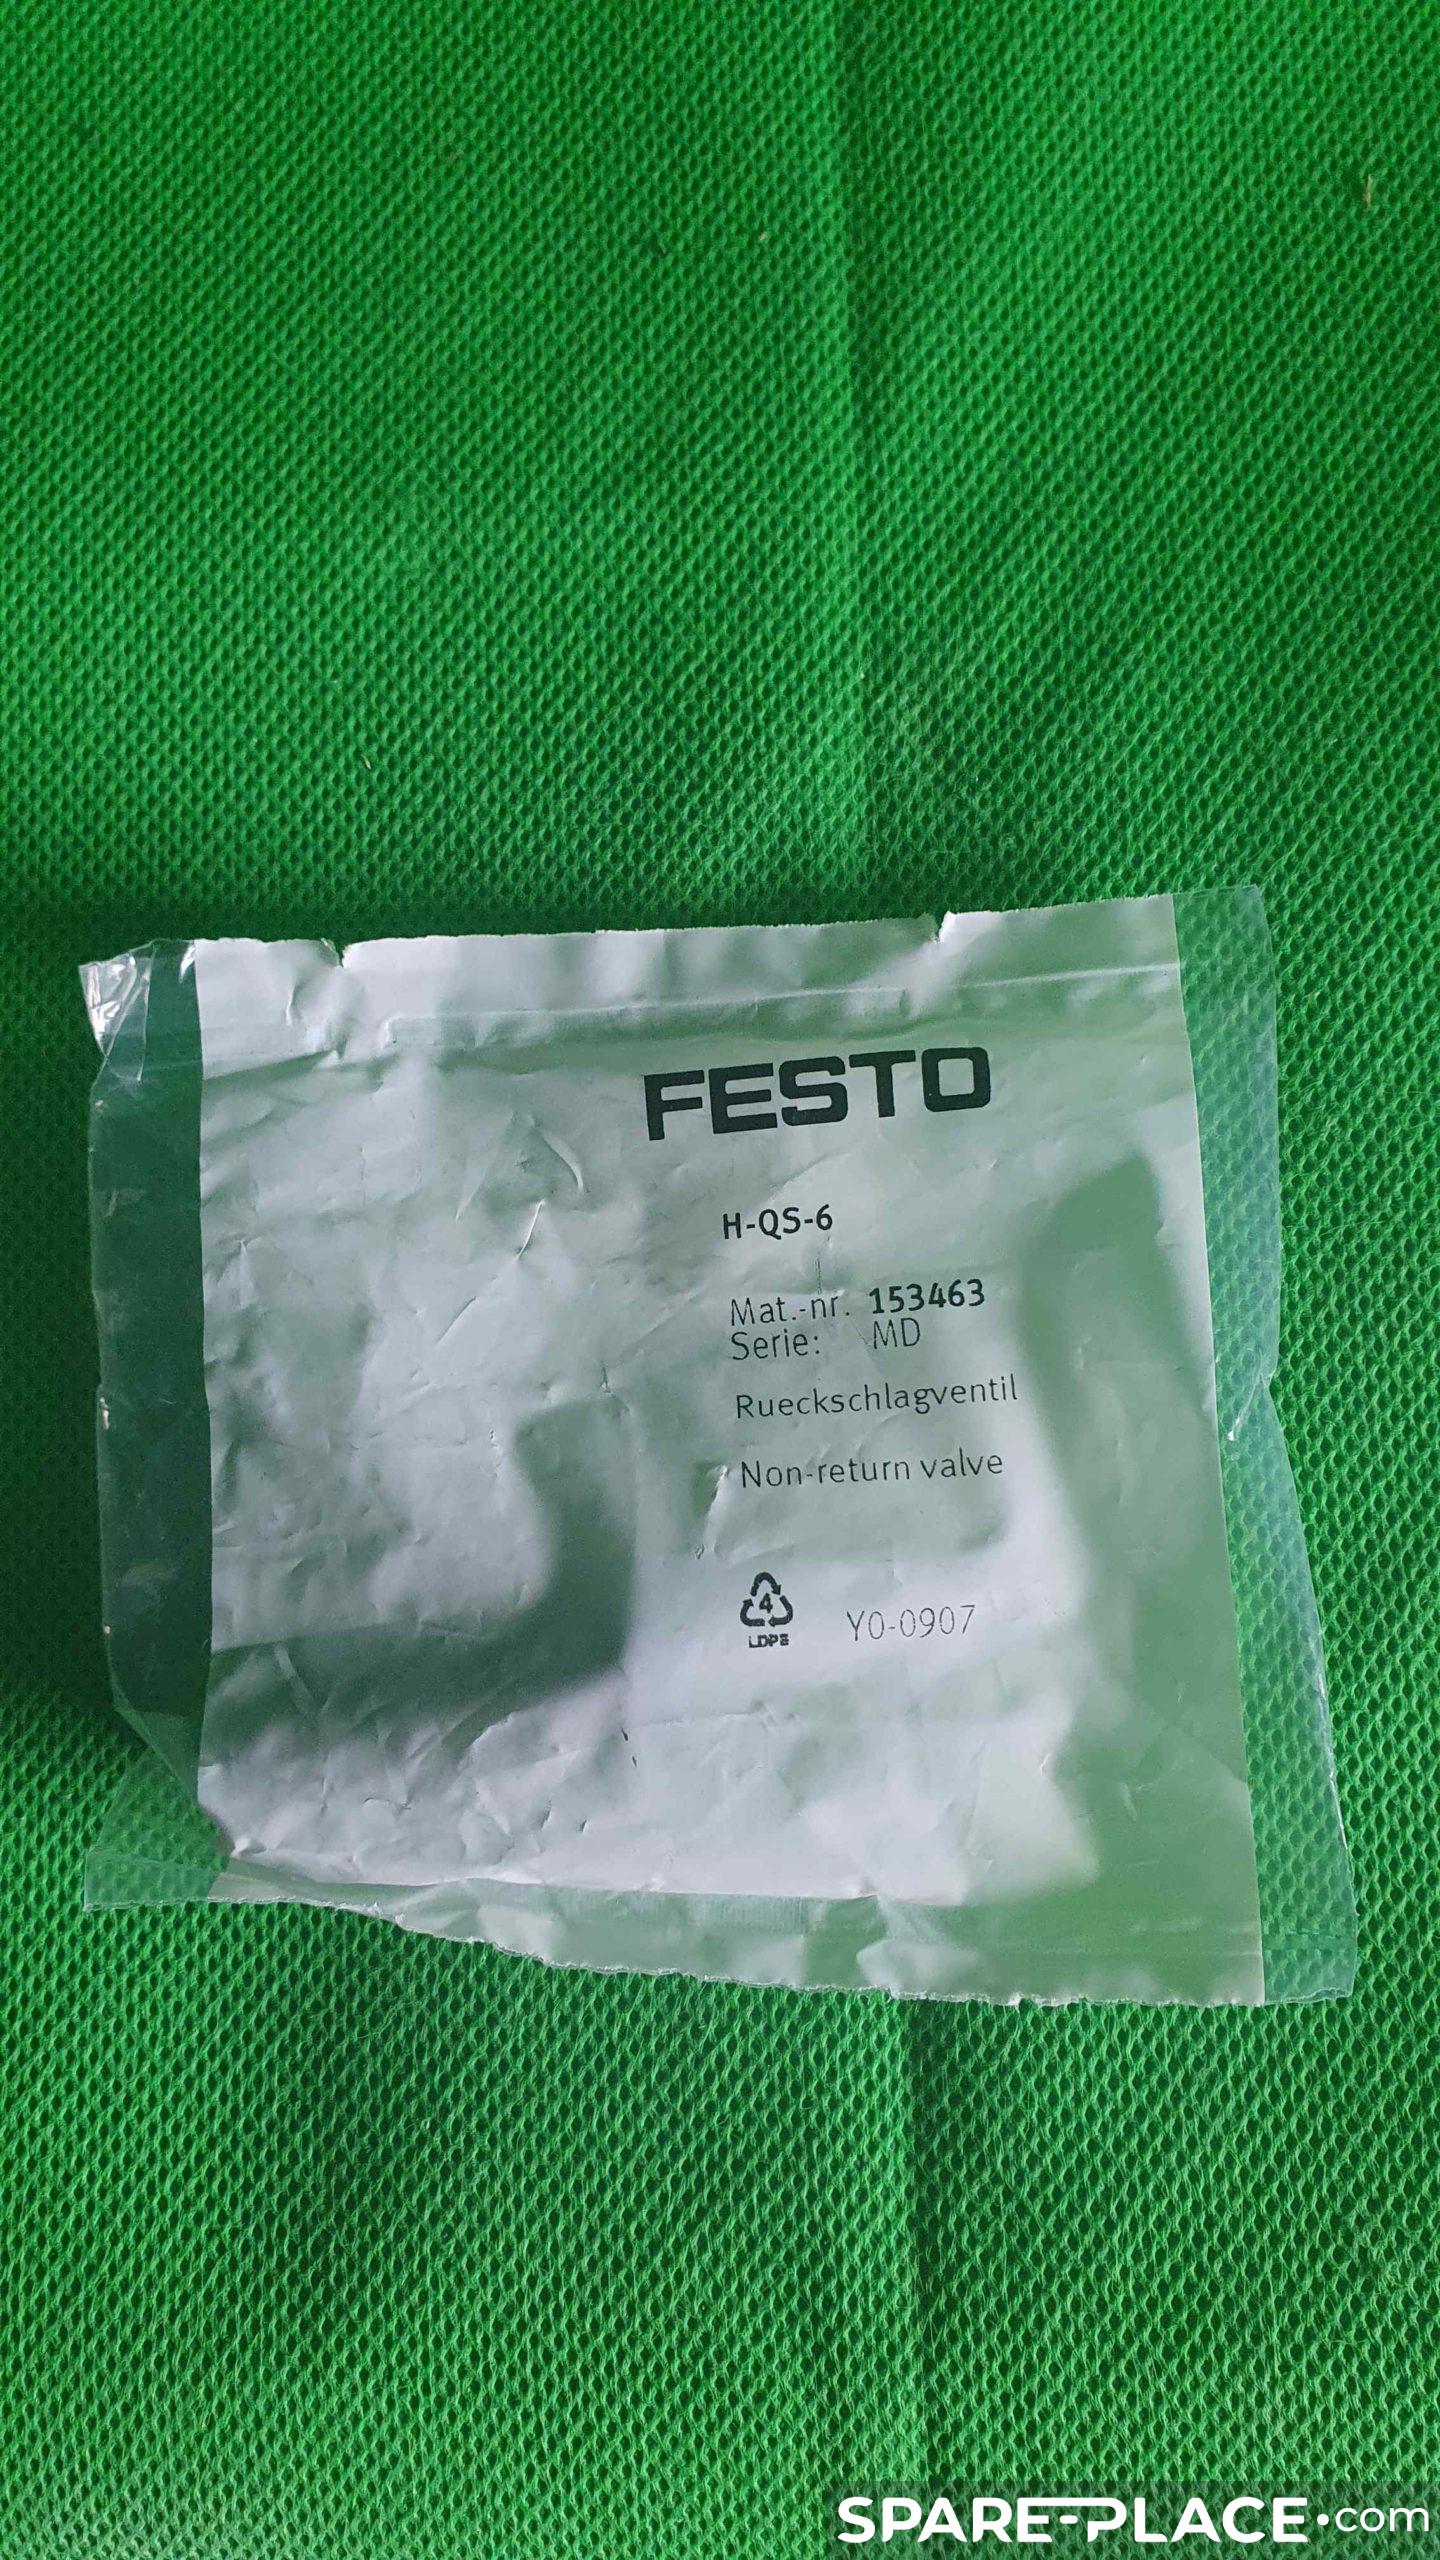 Référence H-QS-6 de la marque FESTO